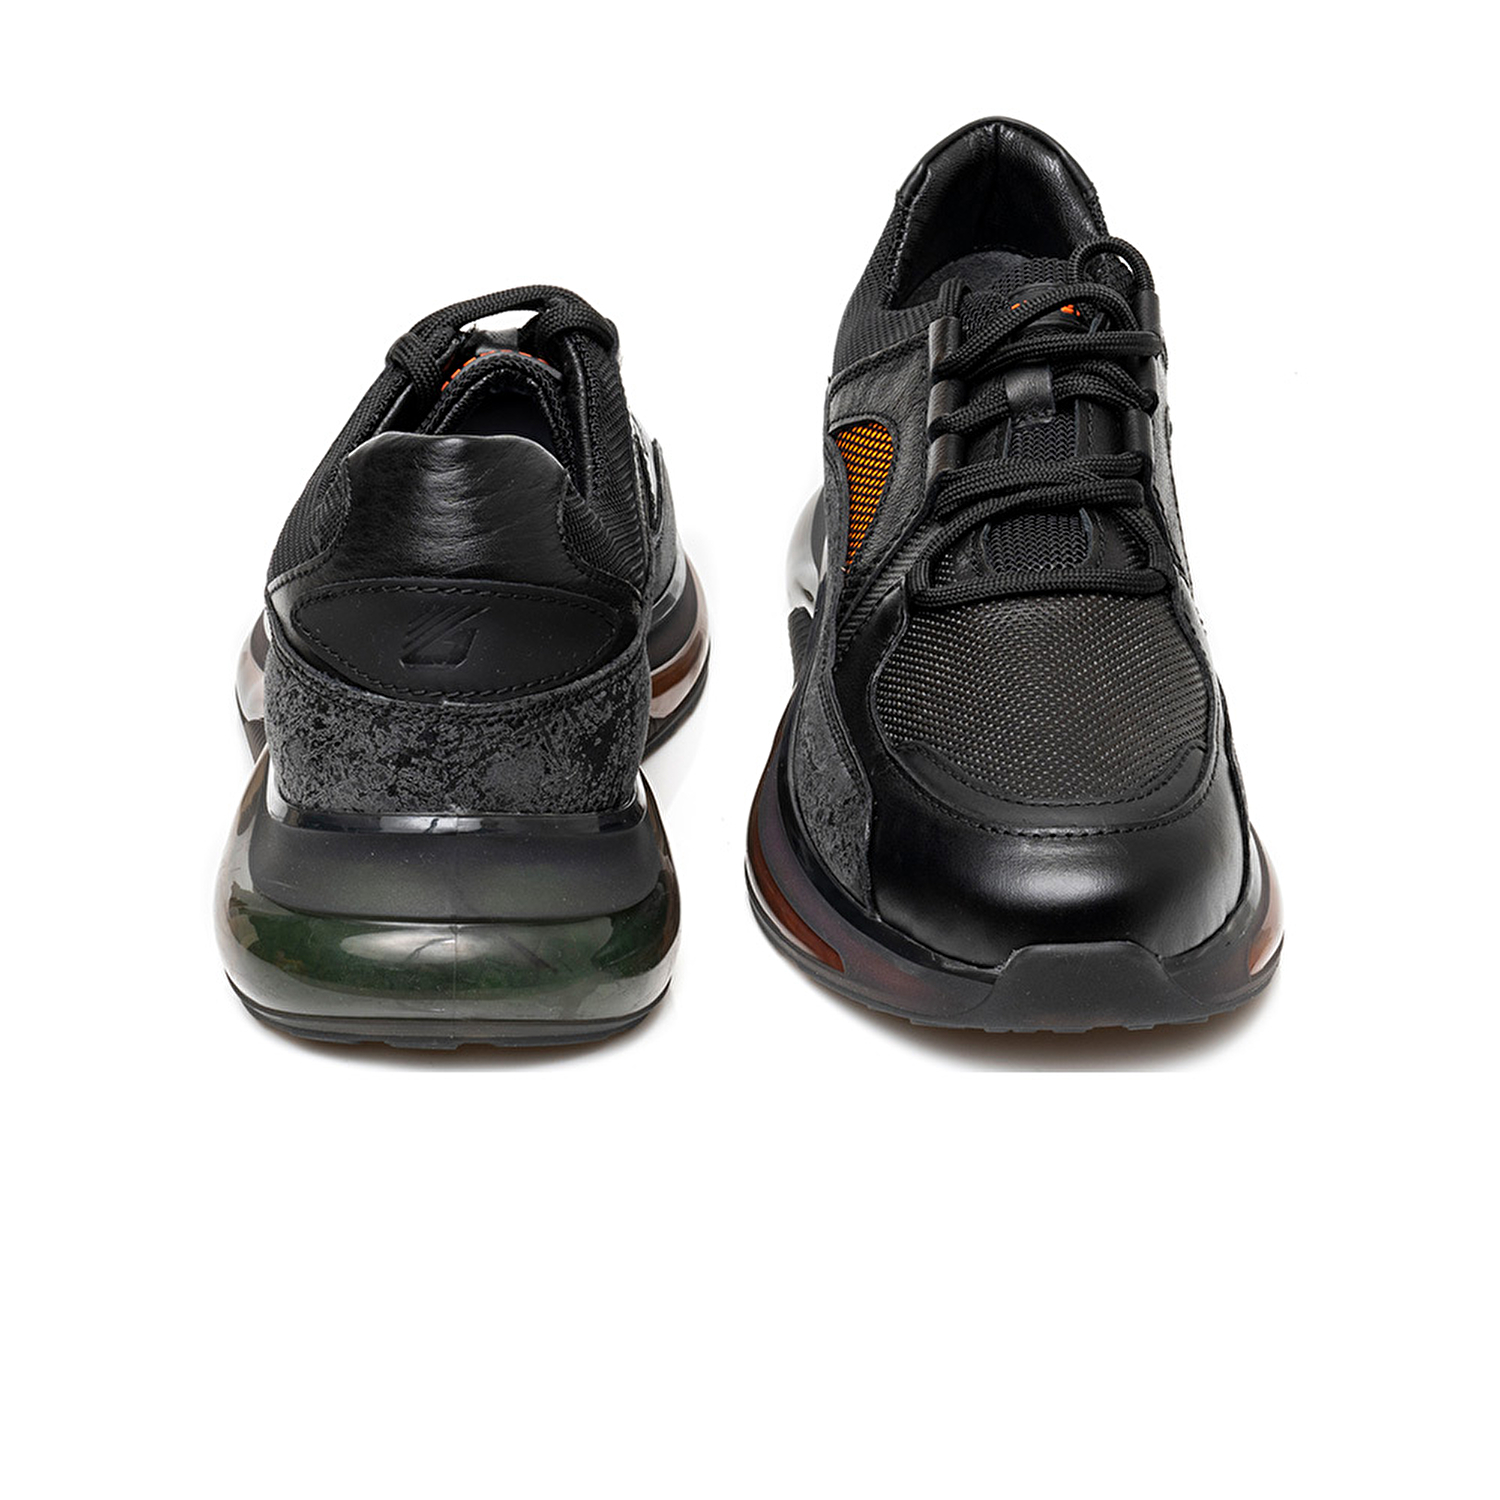 Erkek Siyah Süet Hakiki Deri Sneaker Ayakkabı 3K1SA75156-6